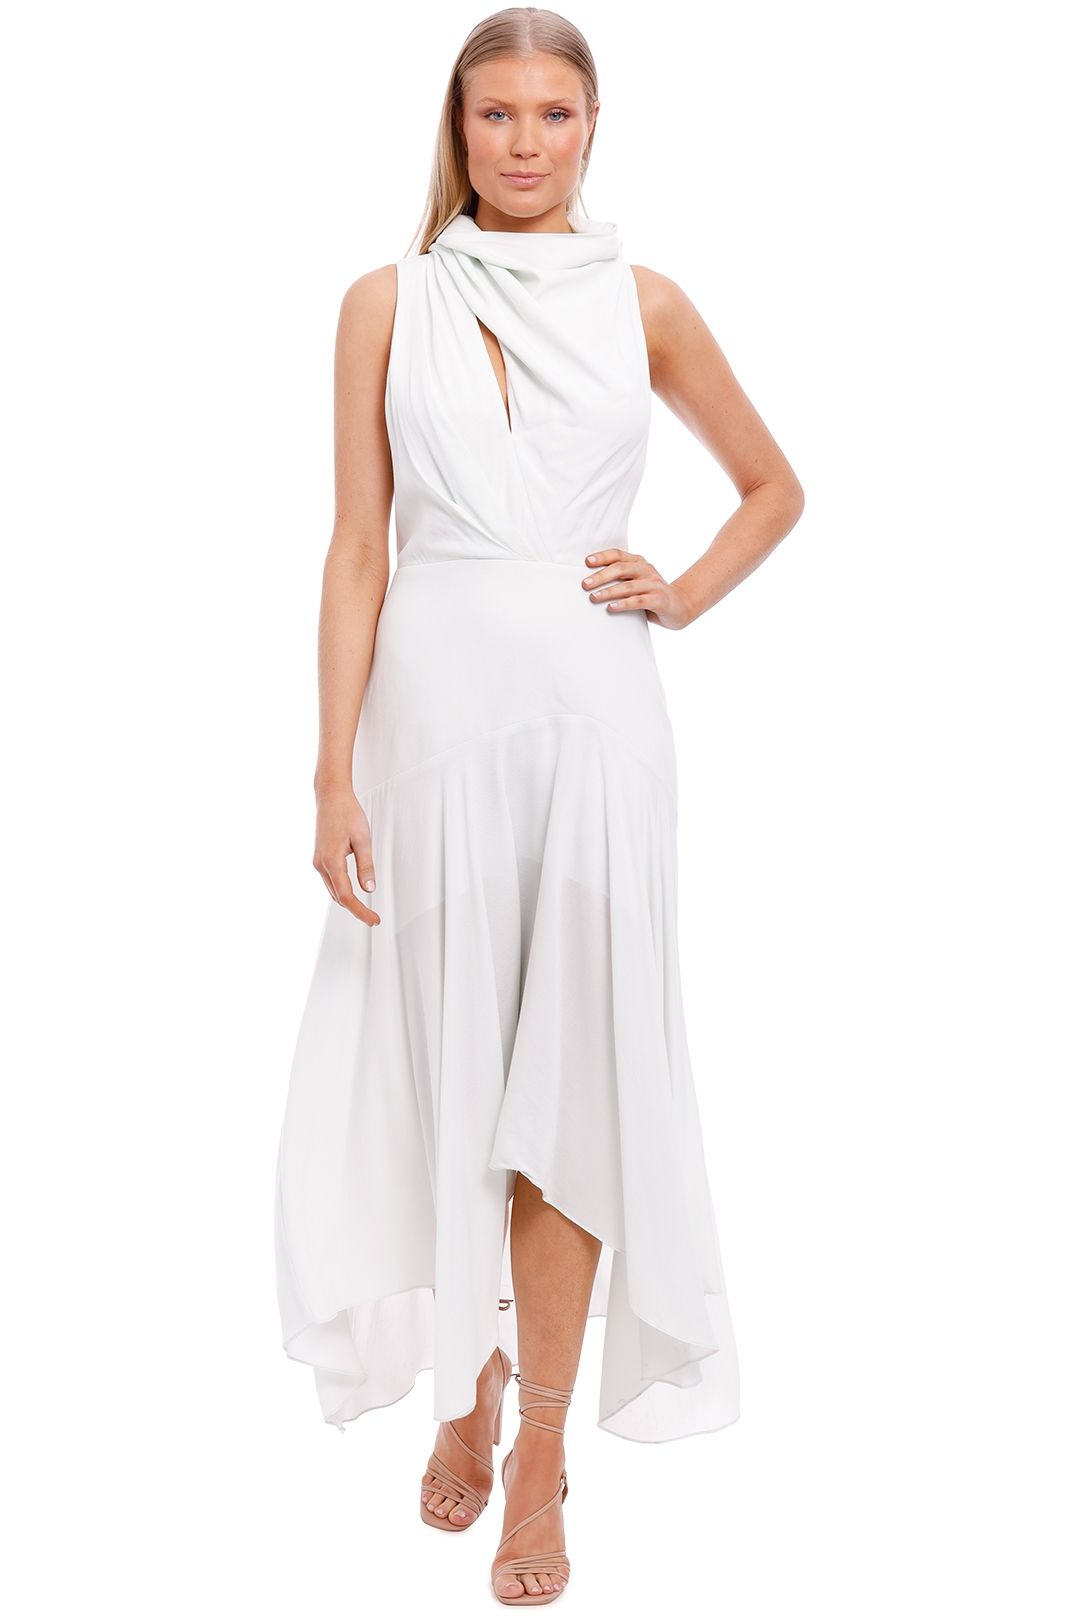 Acler Kilmaine Dress white